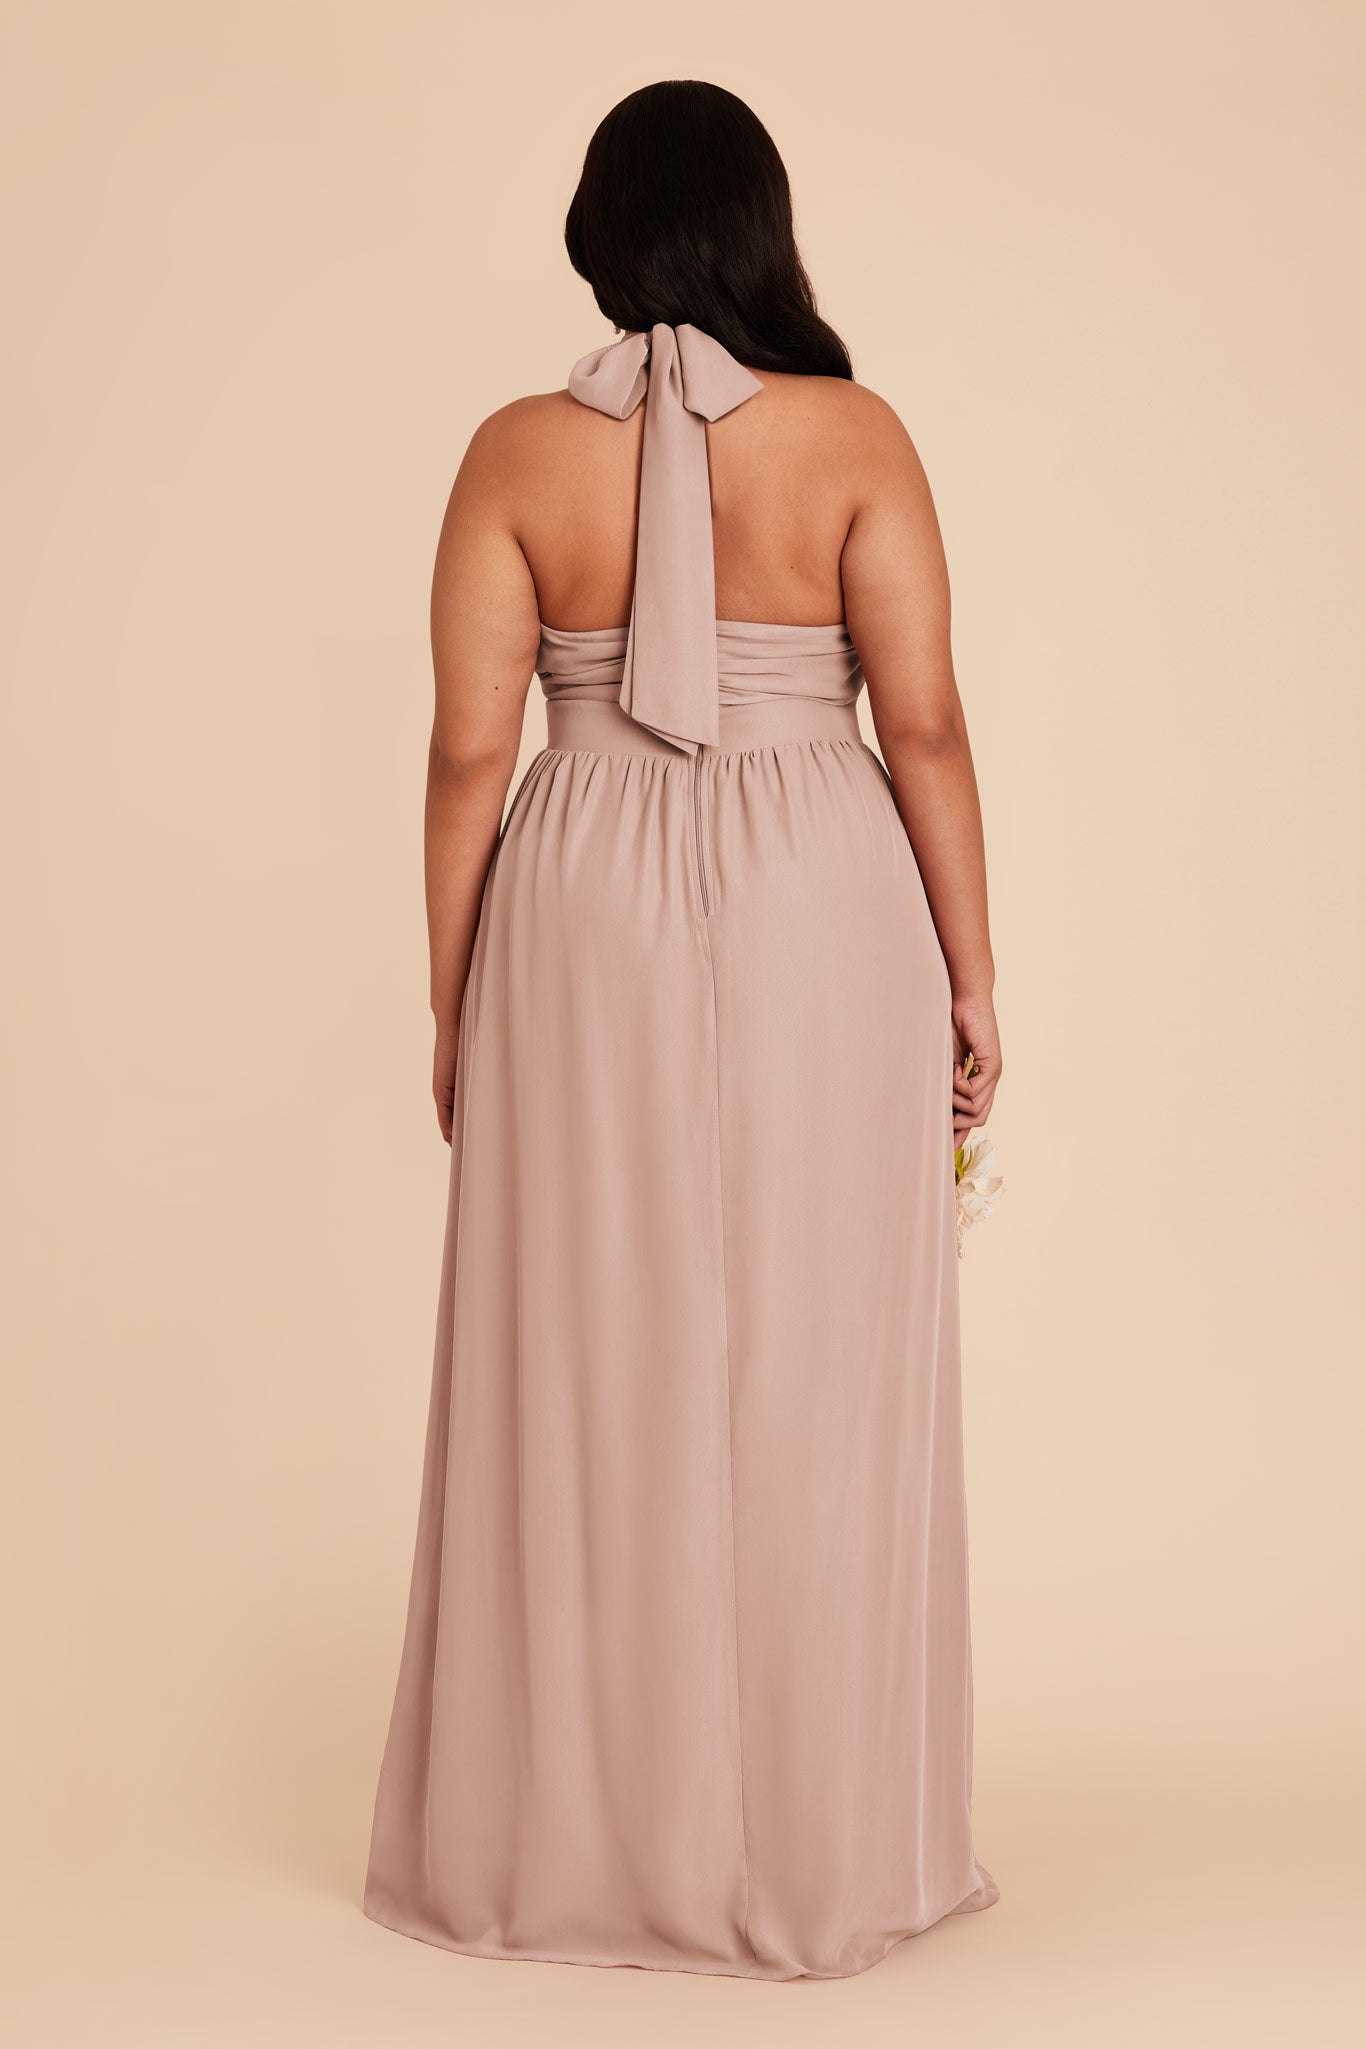 Taupe Joyce Chiffon Dress by Birdy Grey